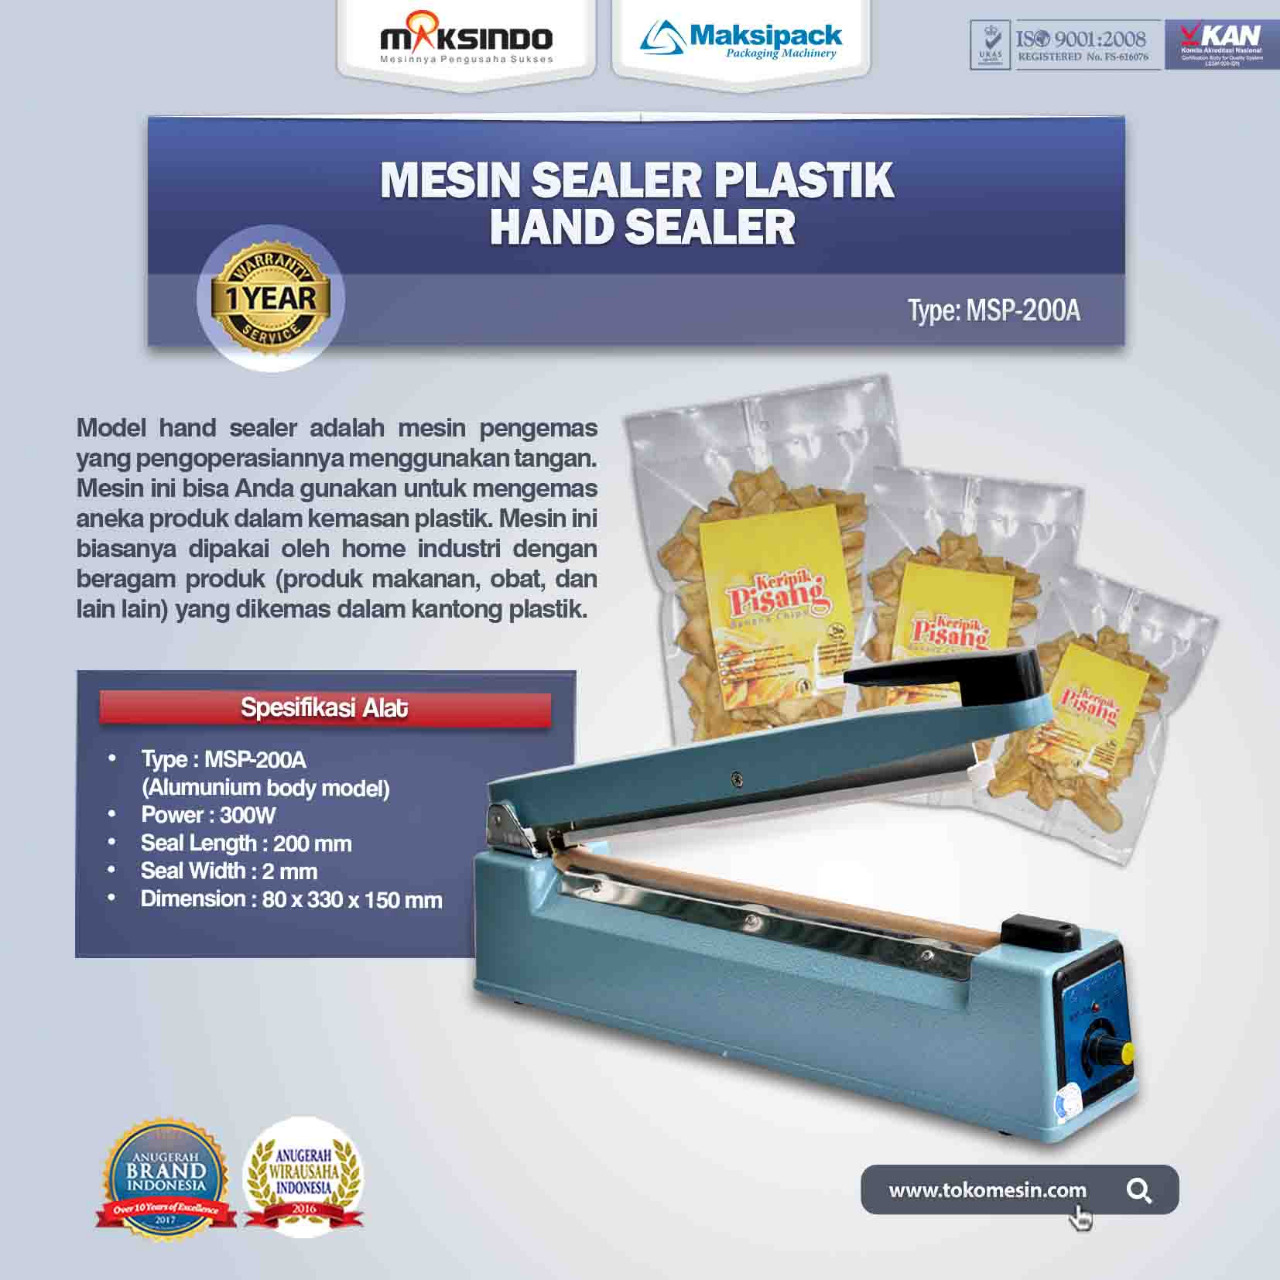 Jual Mesin Sealer Plastik Hand Sealer (MSP-200A) Di Bekasi